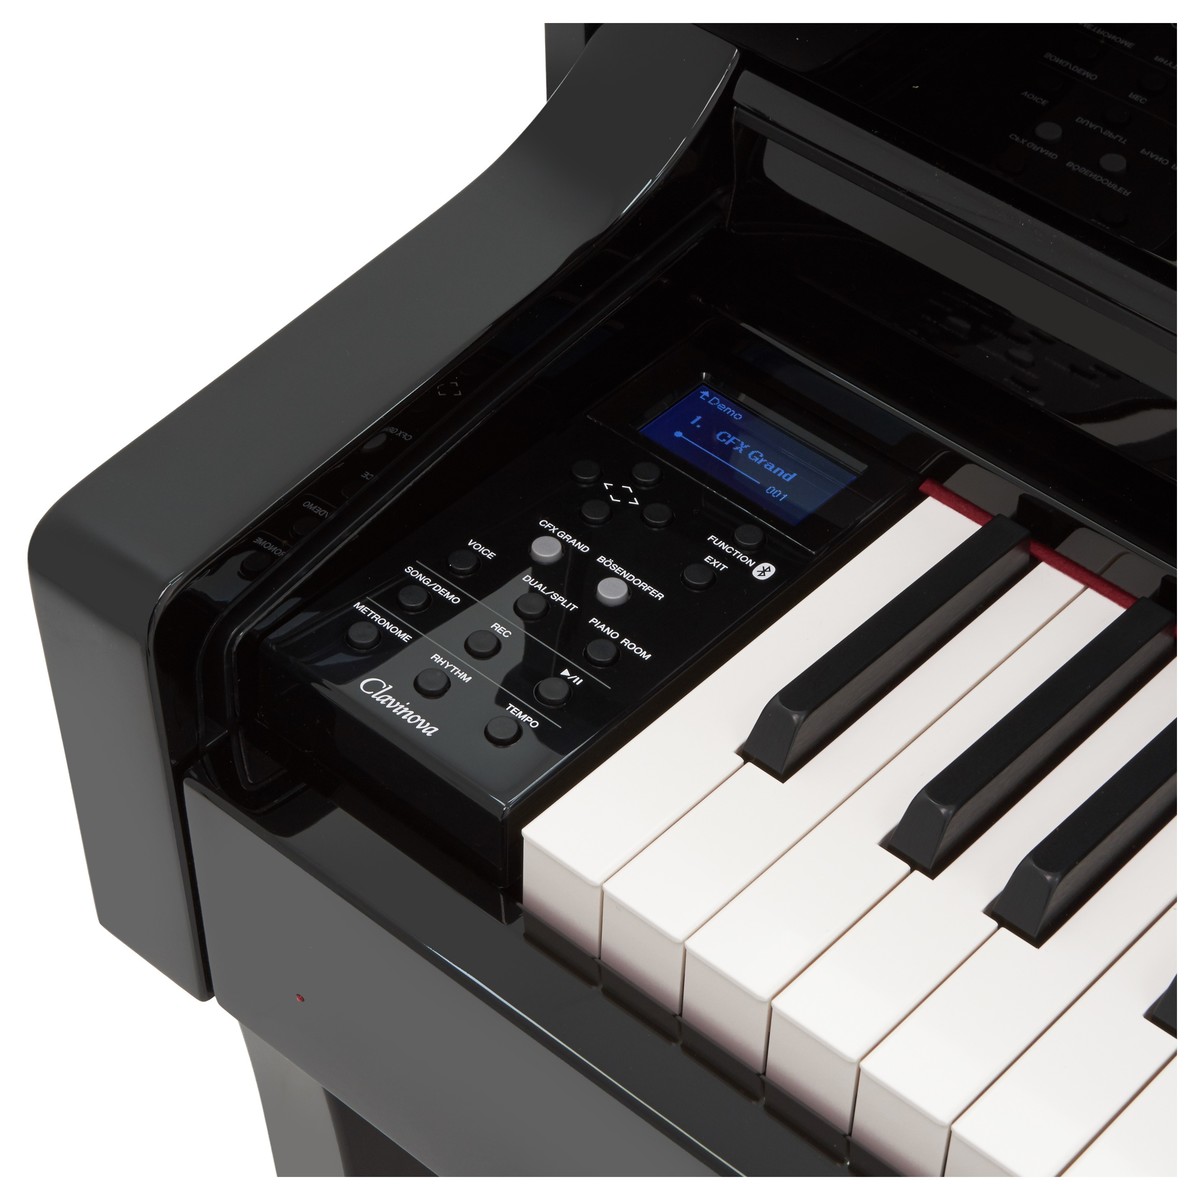 پیانو دیجیتال یاماها CLP-645